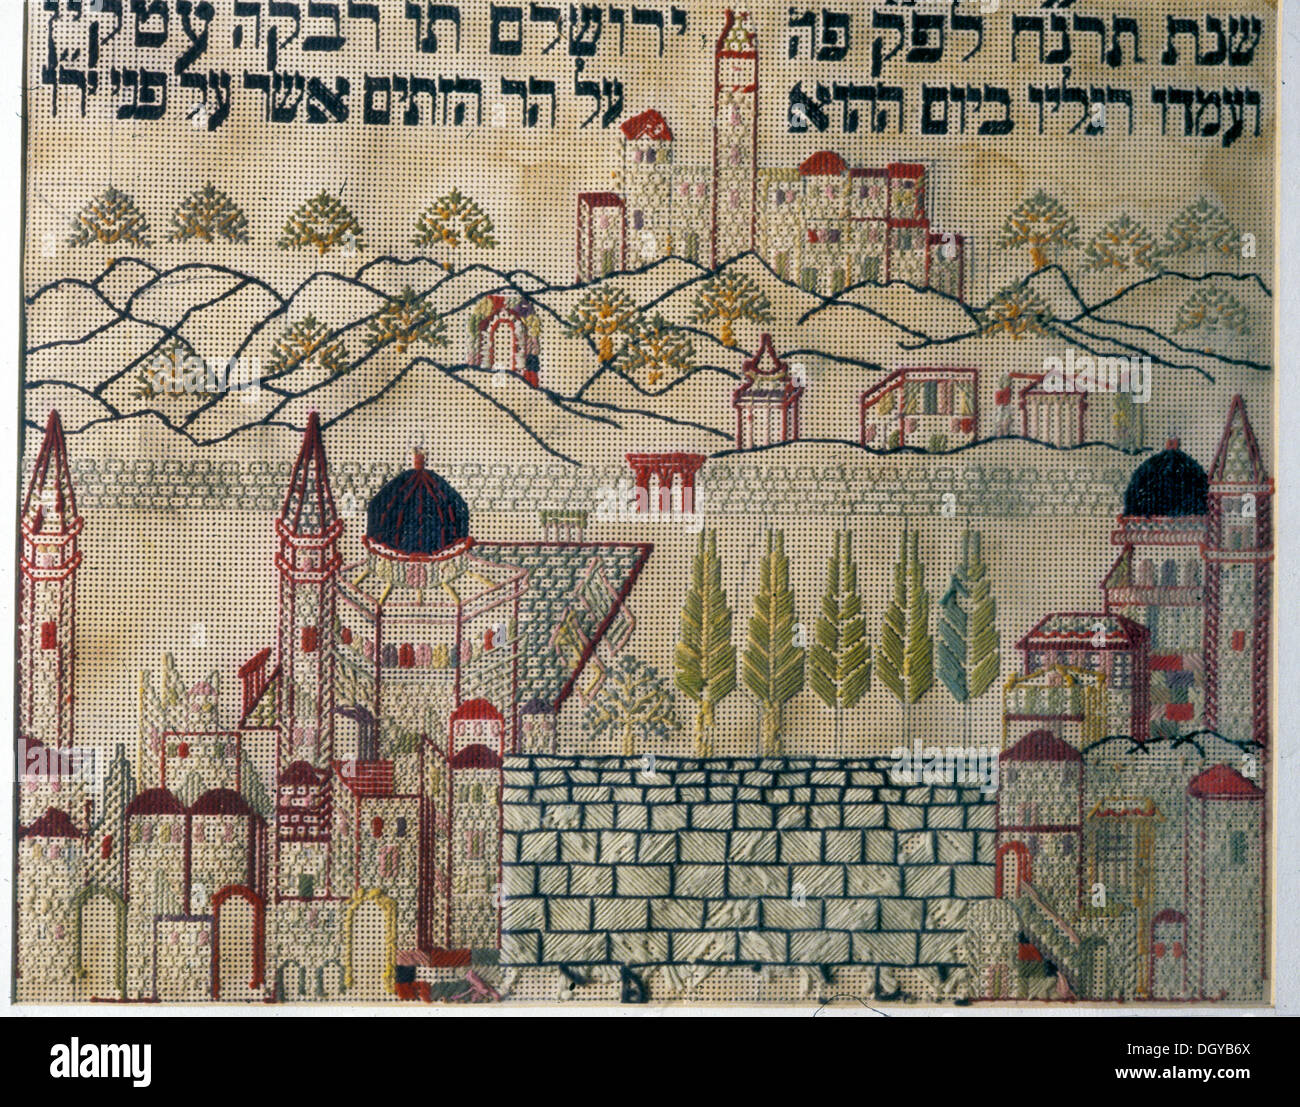 5585. Stickerei genannt "Osten" - Masche Sampler an der östlichen Wand des mittleren europäischen jüdischen Hauses hängen die Richtung des Gebets nach Jerusalem, Westwand in der Mitte an. Stockfoto